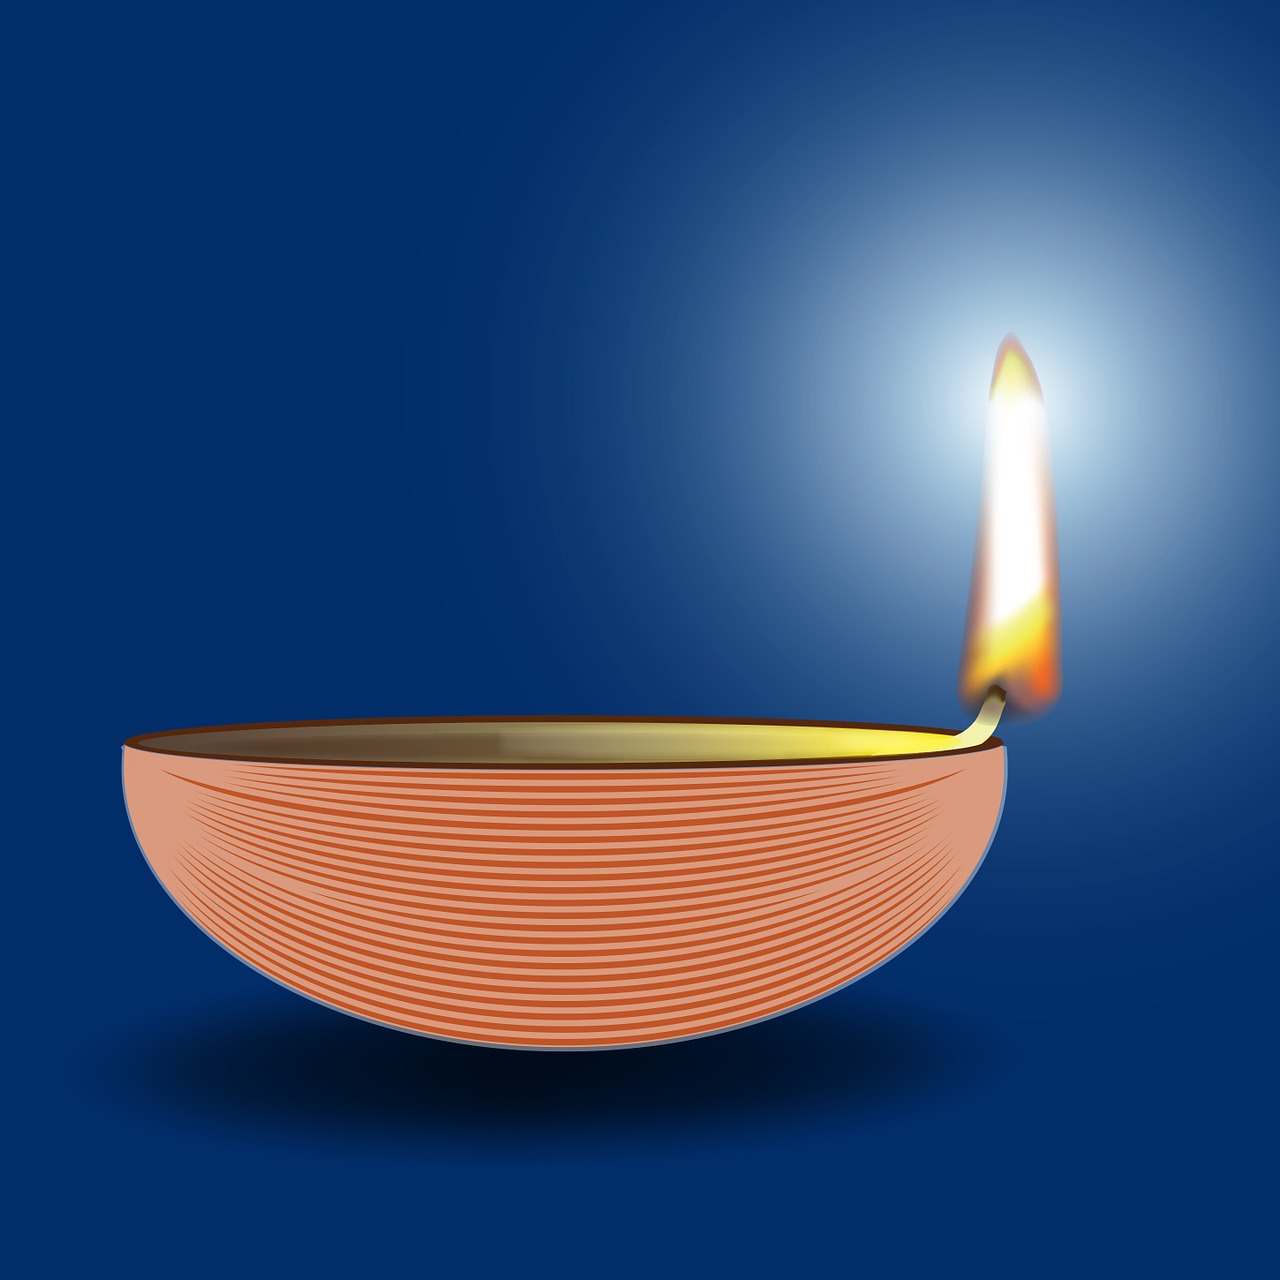 Žvakė, Diwali, Diya, Festivalis, Šventė, Indijos, Hinduizmas, Religija, Liepsna, Lempa